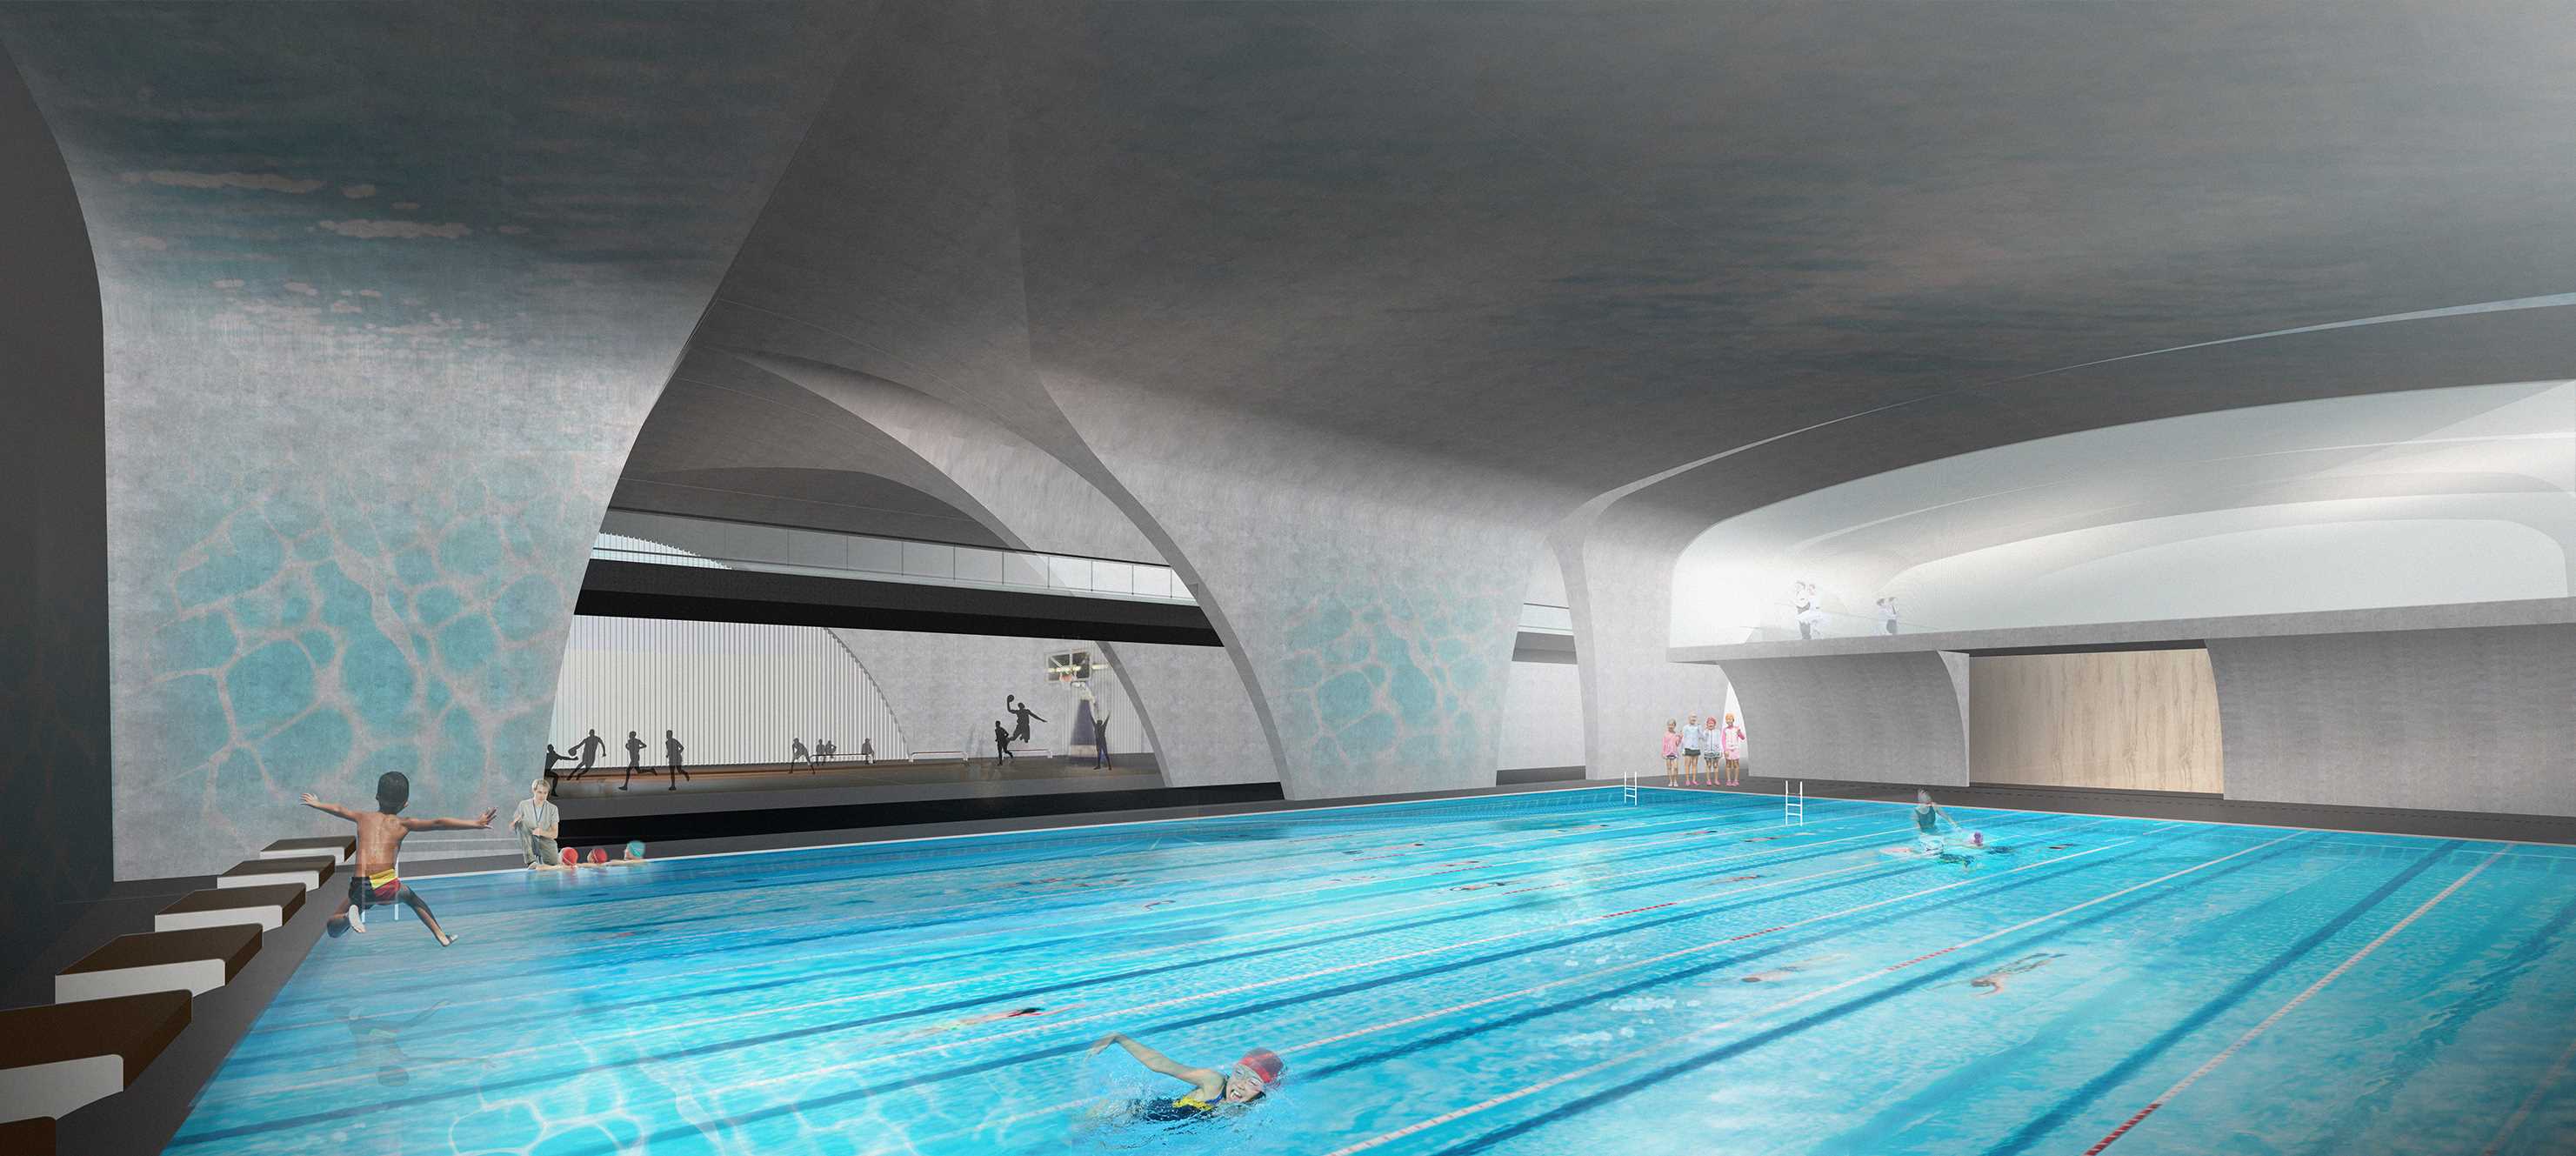 罗湖学校提案-概念方案场景游泳池